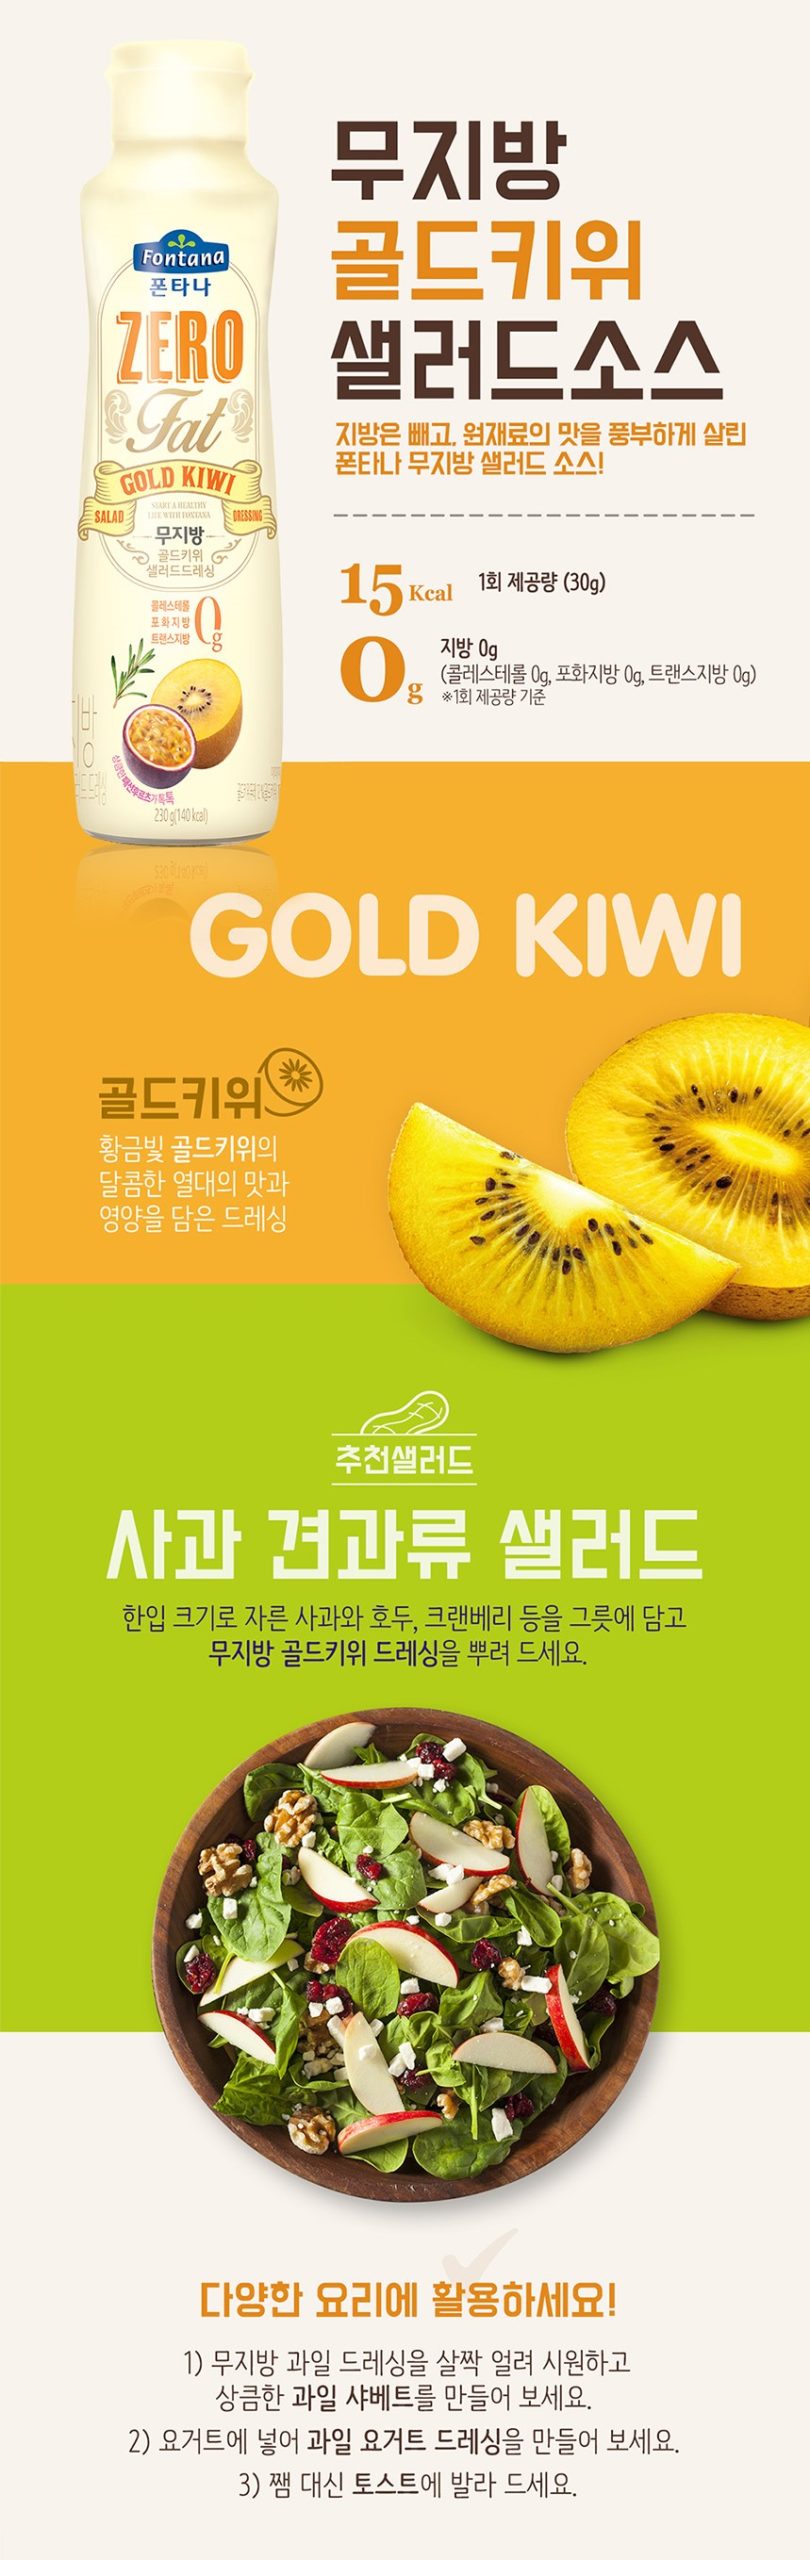 韓國食品-[Sempio] Zero Calorie Salad Dressing (Golden Kiwi) 230g